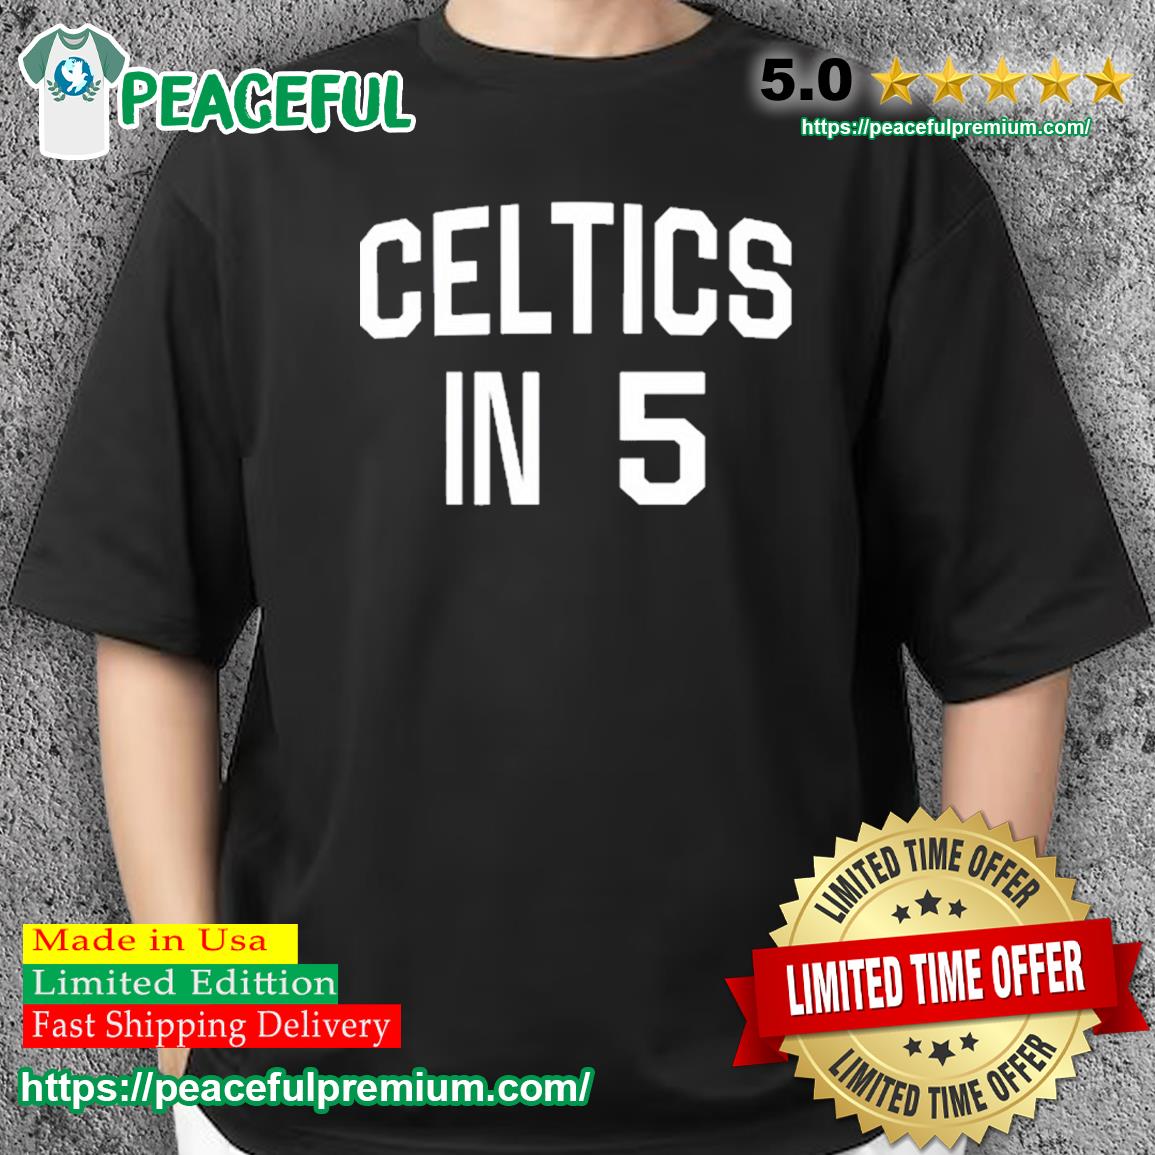 boston celtics black t shirt